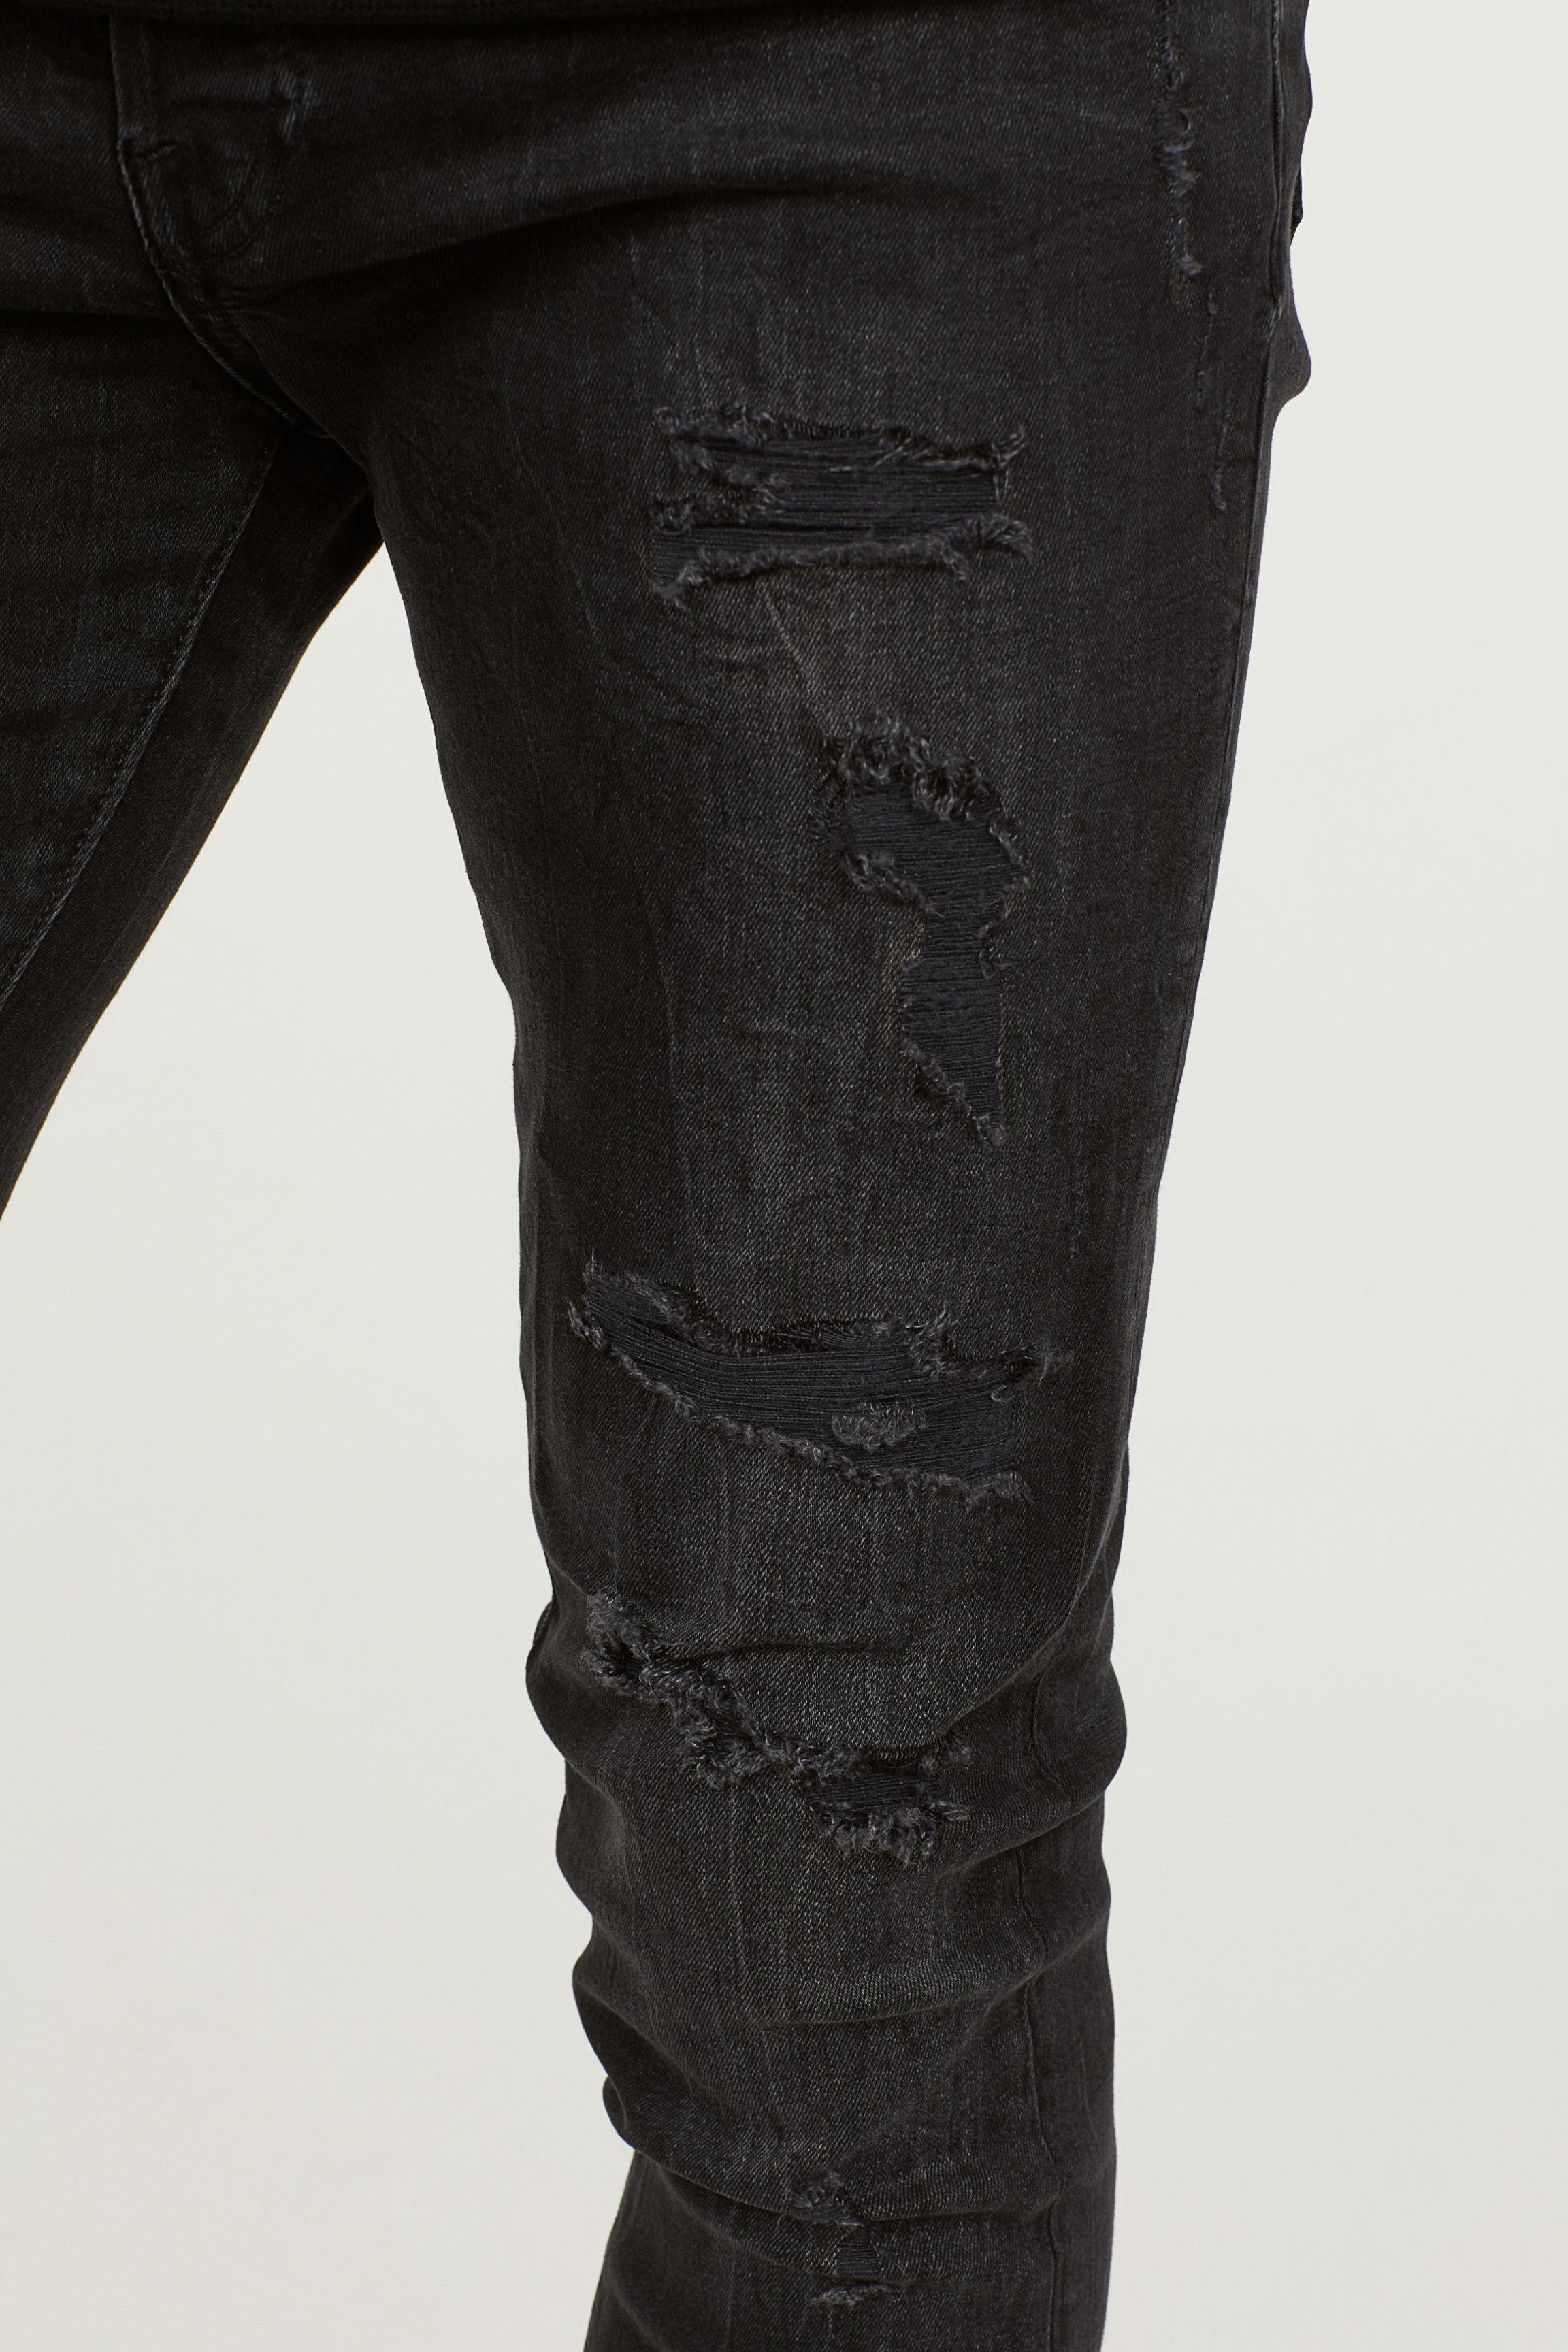 H&M Denim Trashed Skinny Jeans in Black for Men - Lyst